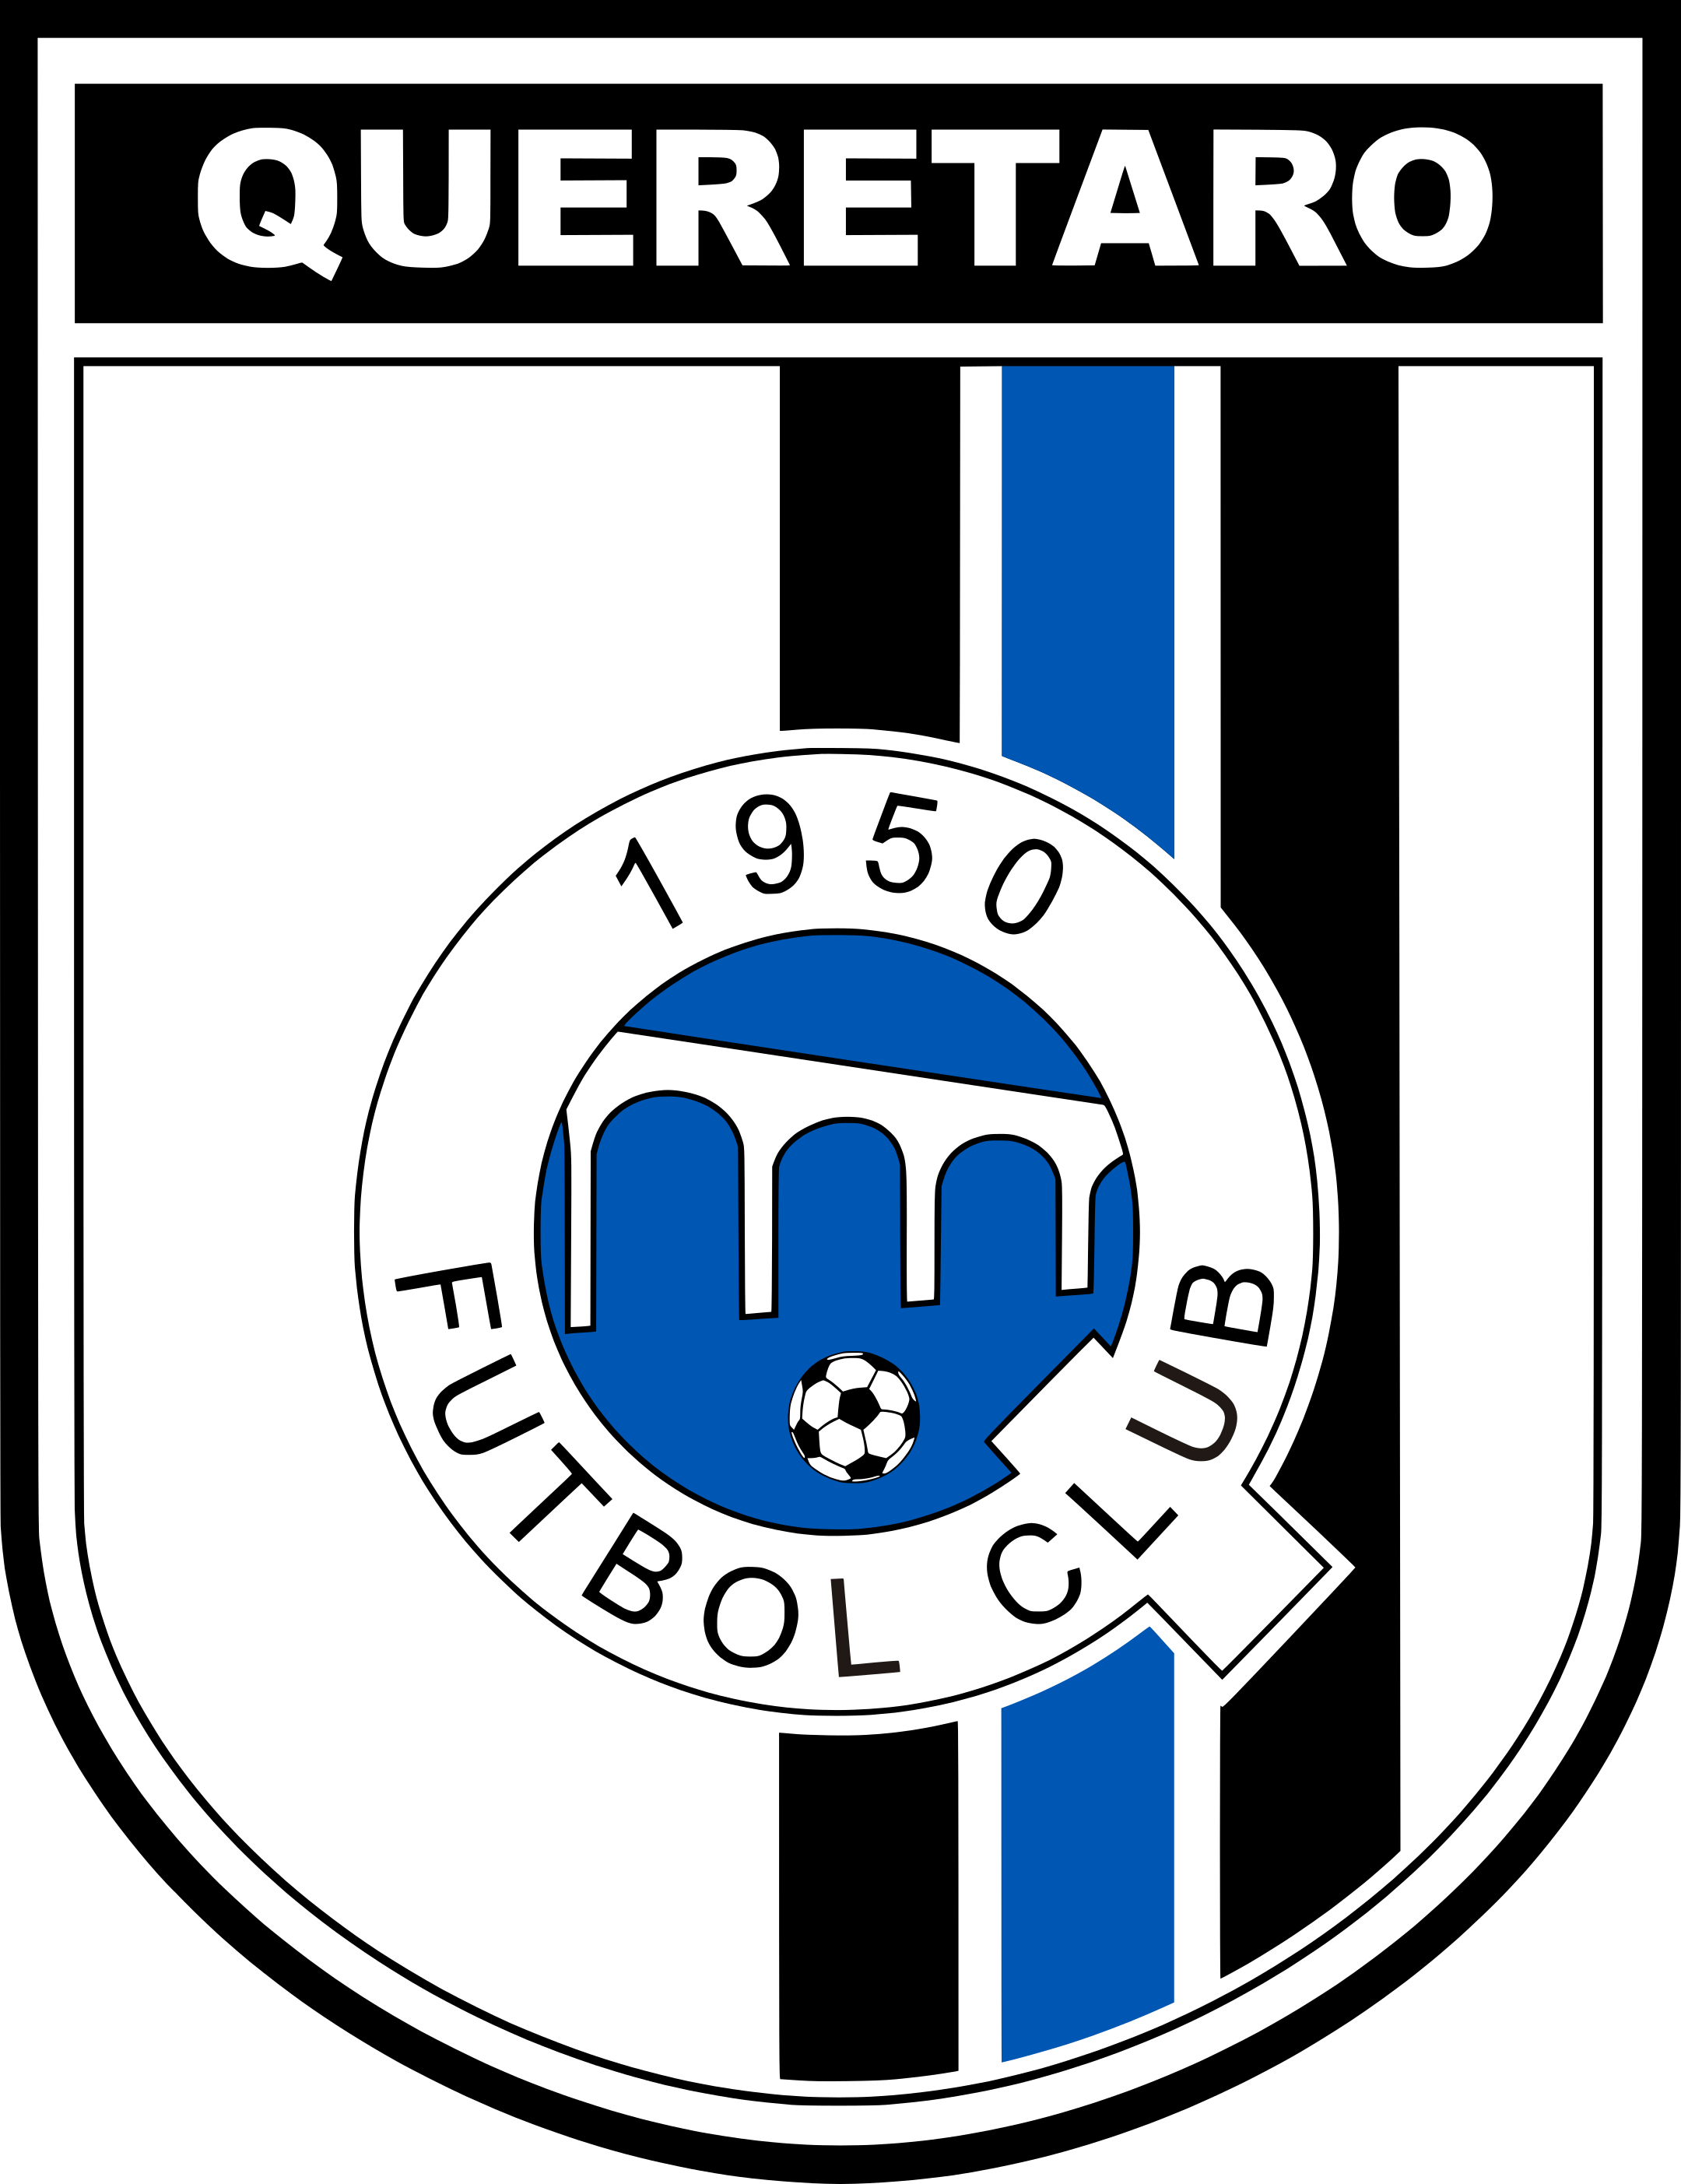 queretaro fc logo 1 - Querétaro FC Logo